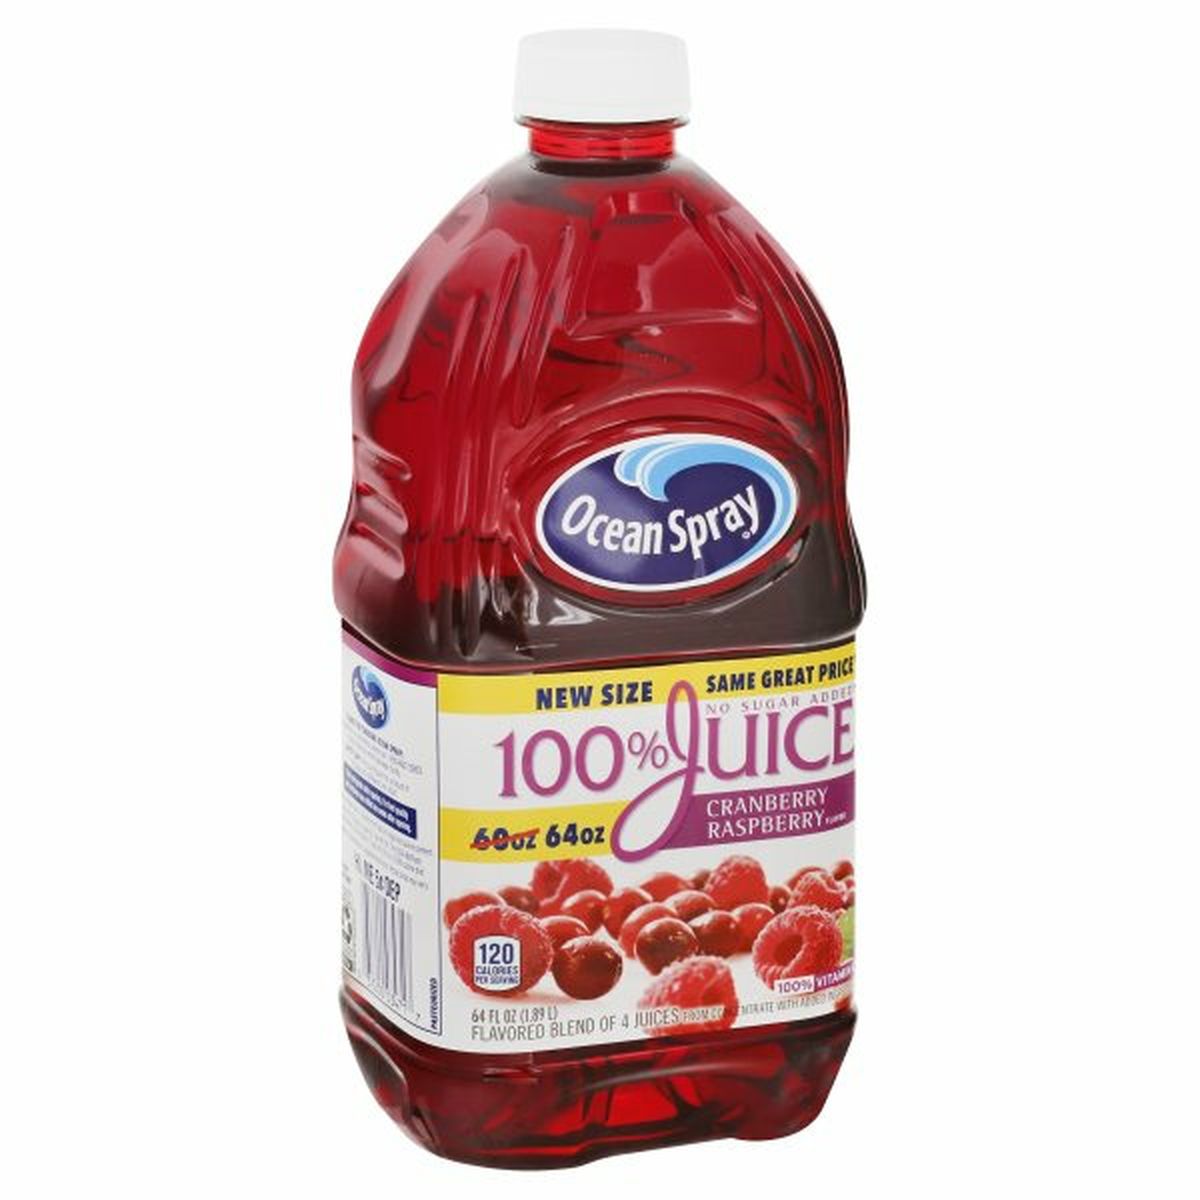 Calories in Ocean Spray 100% Juice, Cranberry Raspberry Flavor